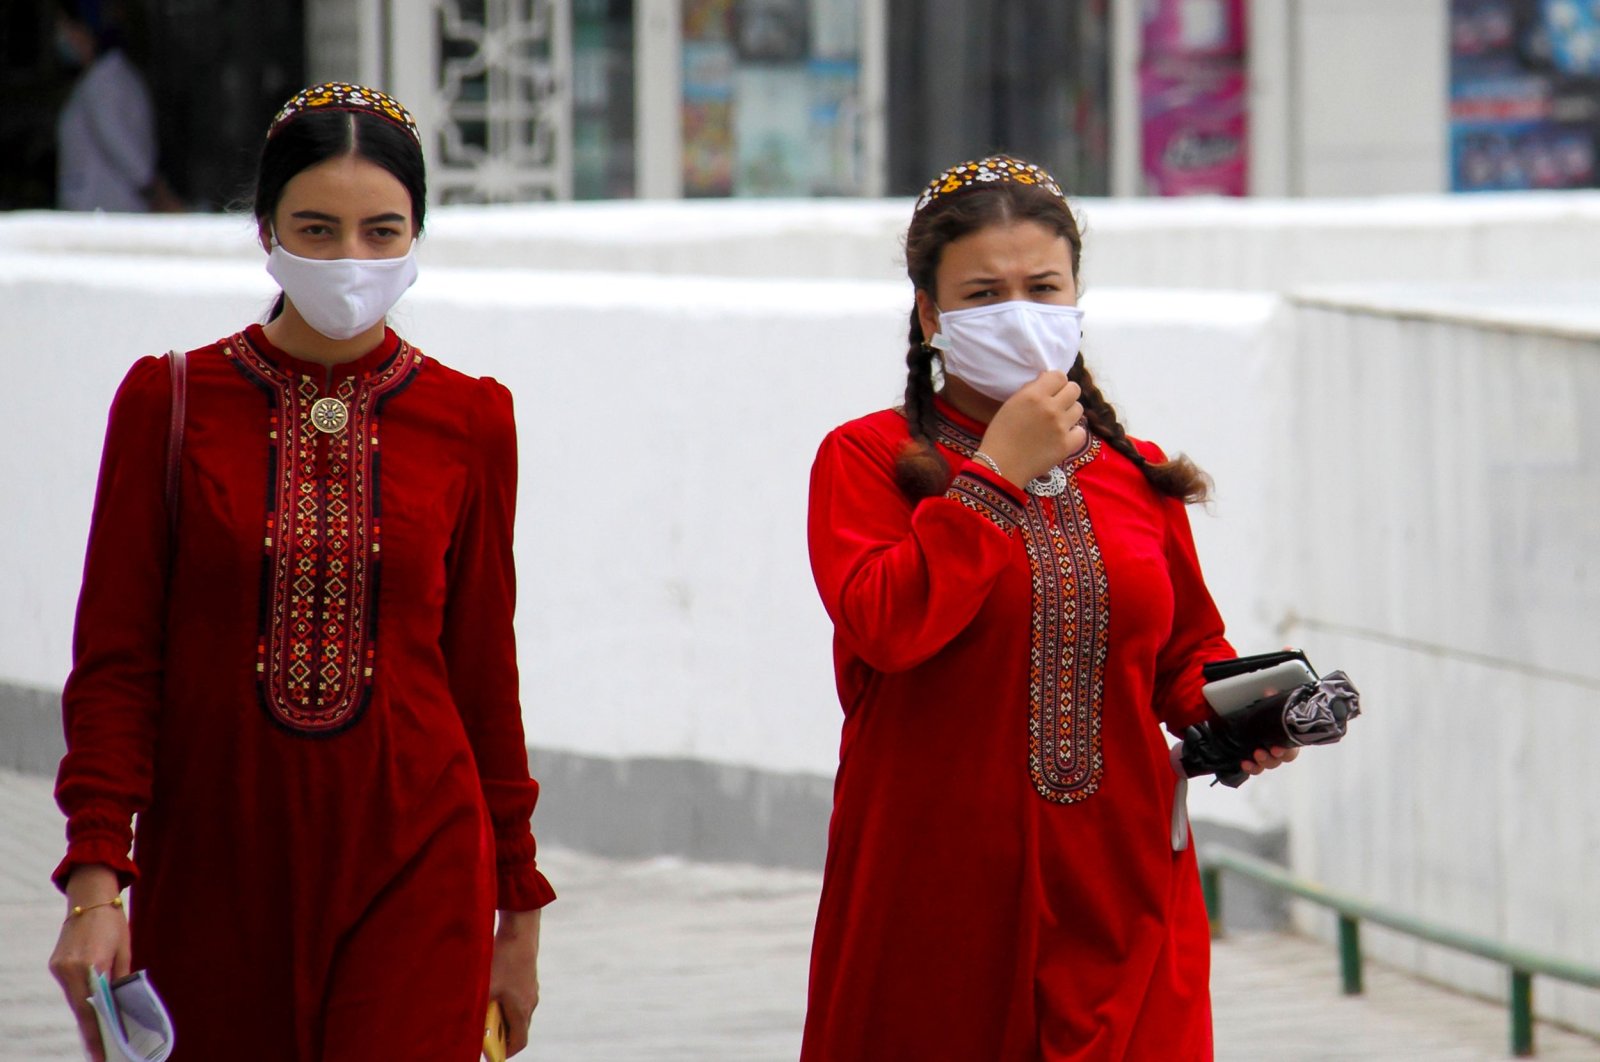 Turkmen women wearing face masks walk in Ashgabat on July 13, 2020. (Photo by STR / AFP)